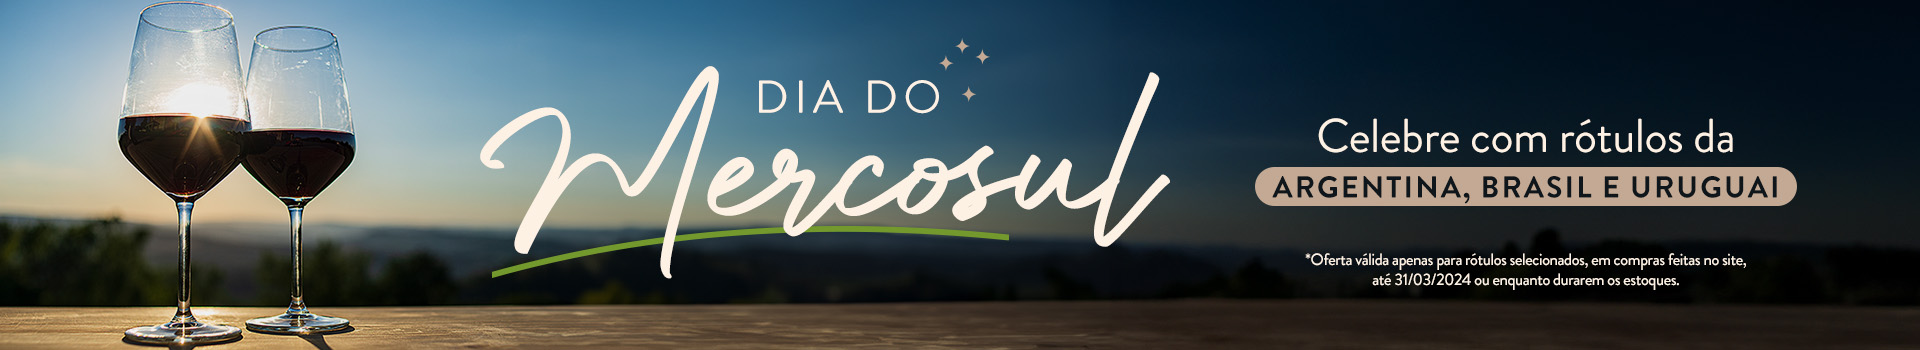 Dia do Mercosul